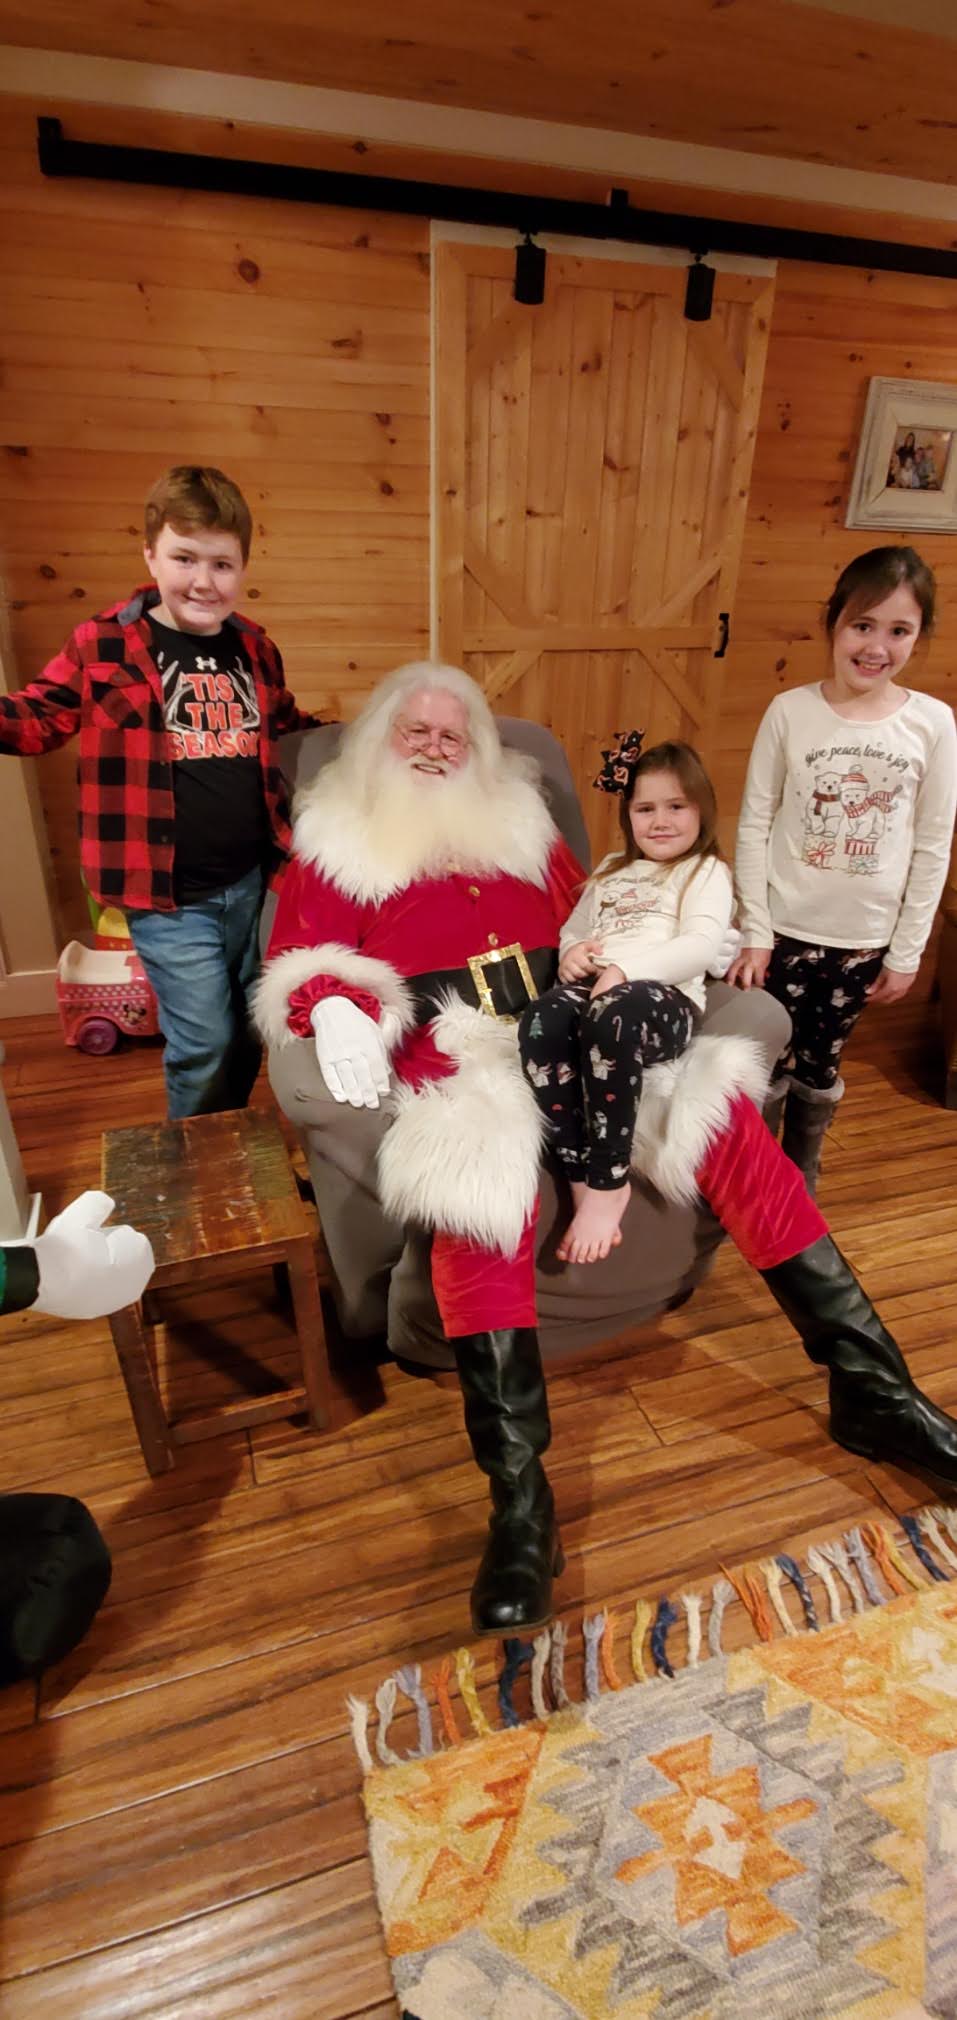 Santa and children